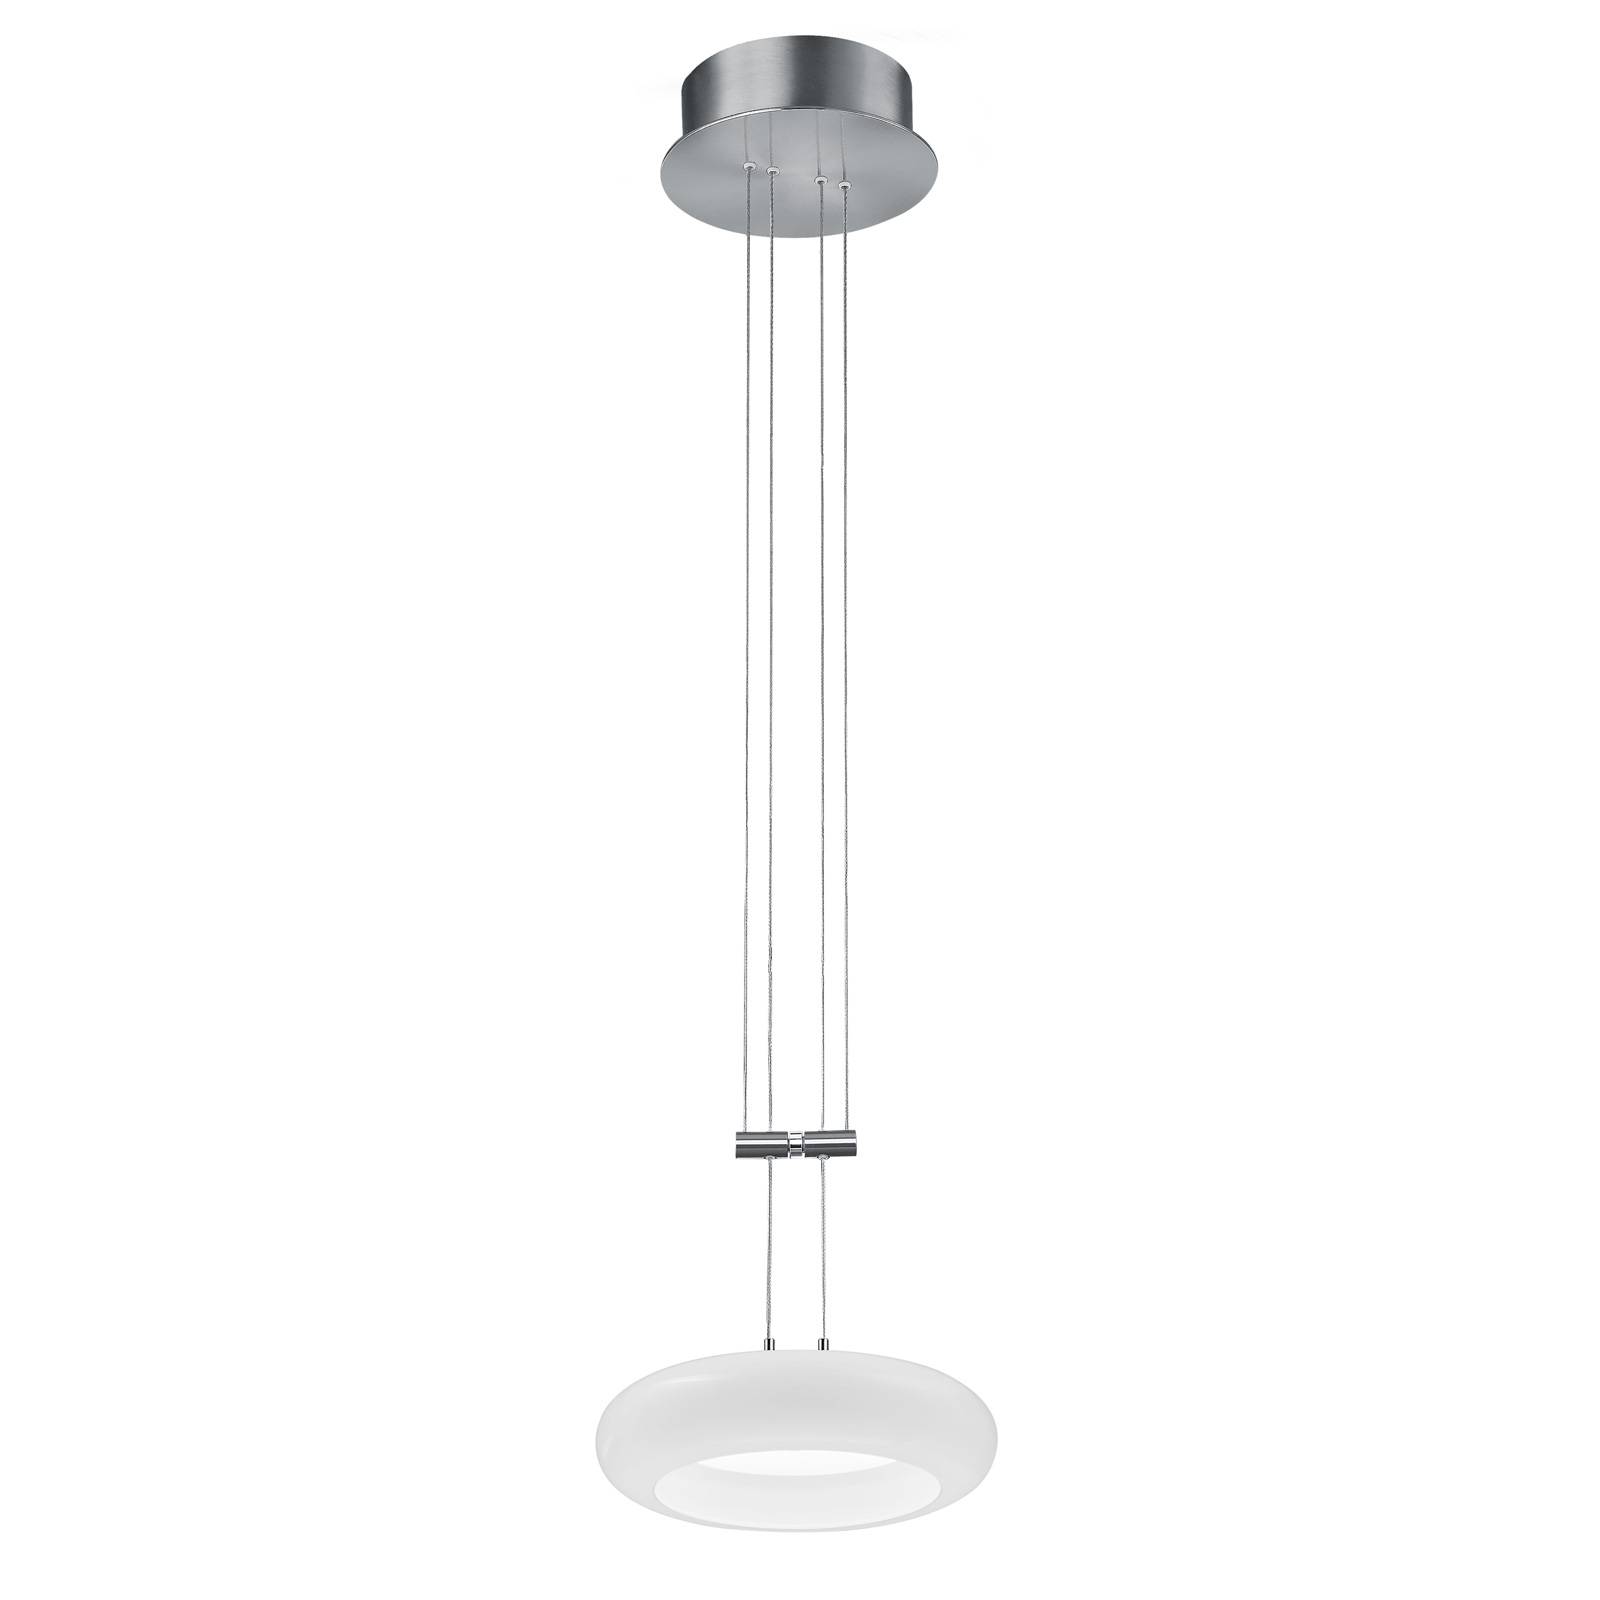 BANKAMP Centa hanglamp 1-lamp 20 cm nikkel